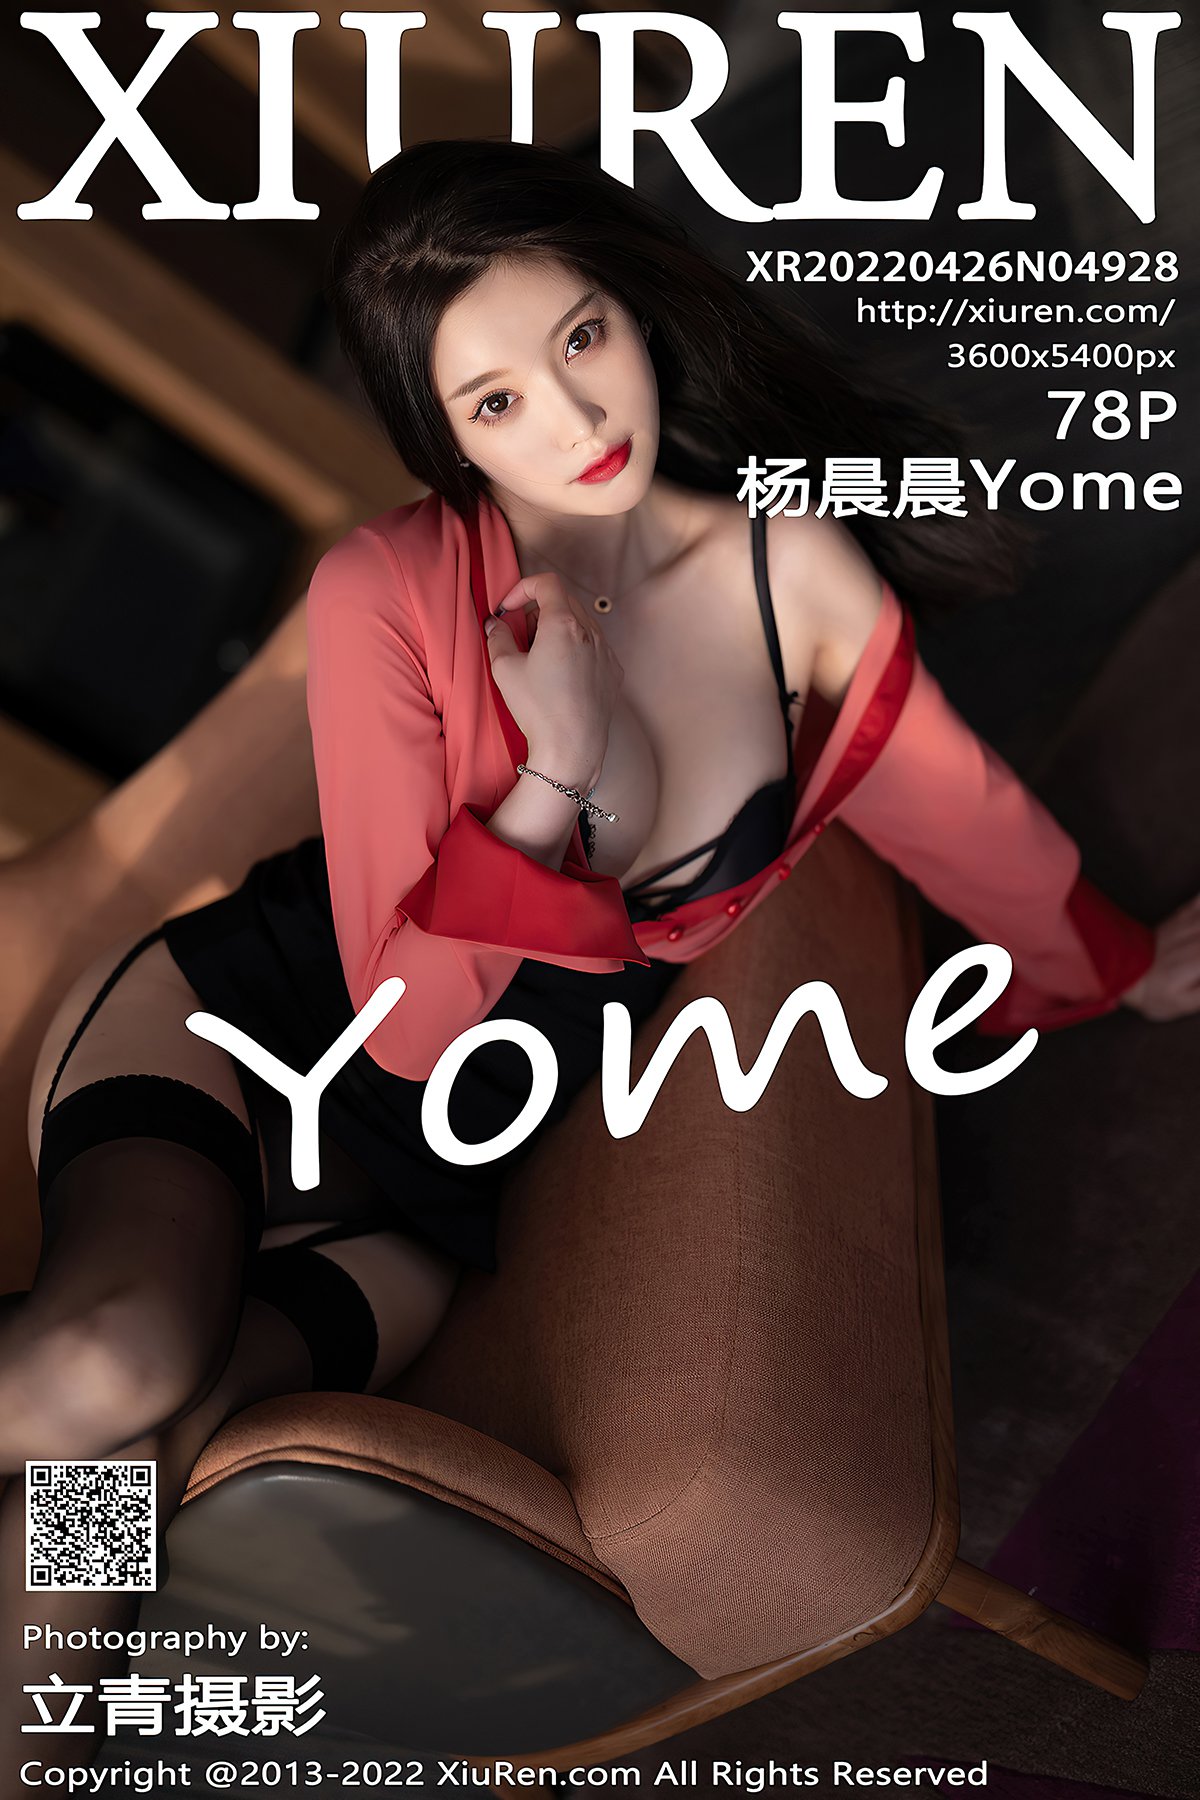 XiuRen秀人网 No.4928 Yang Chen Chen Yome